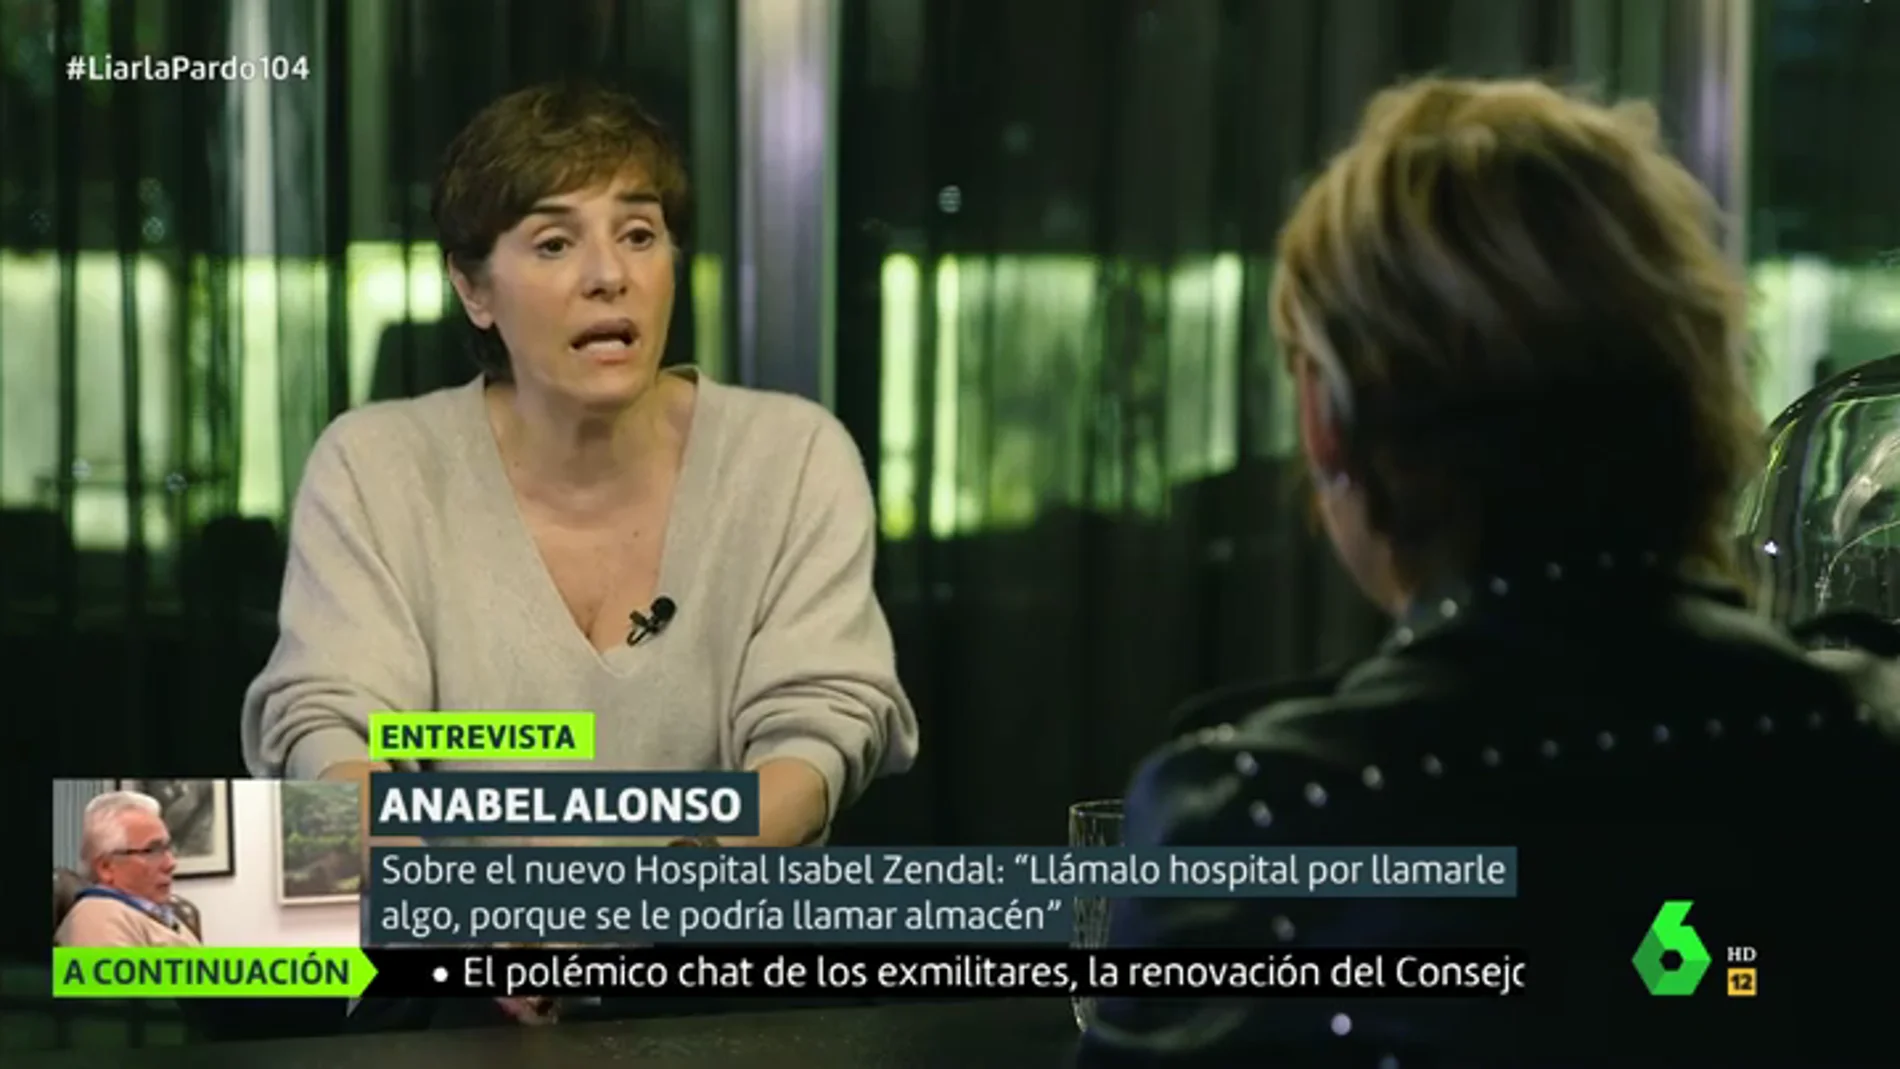 Anabel Alonso: "Al Zendal se le llama hospital por llamarle algo, porque se le podría llamar almacén"